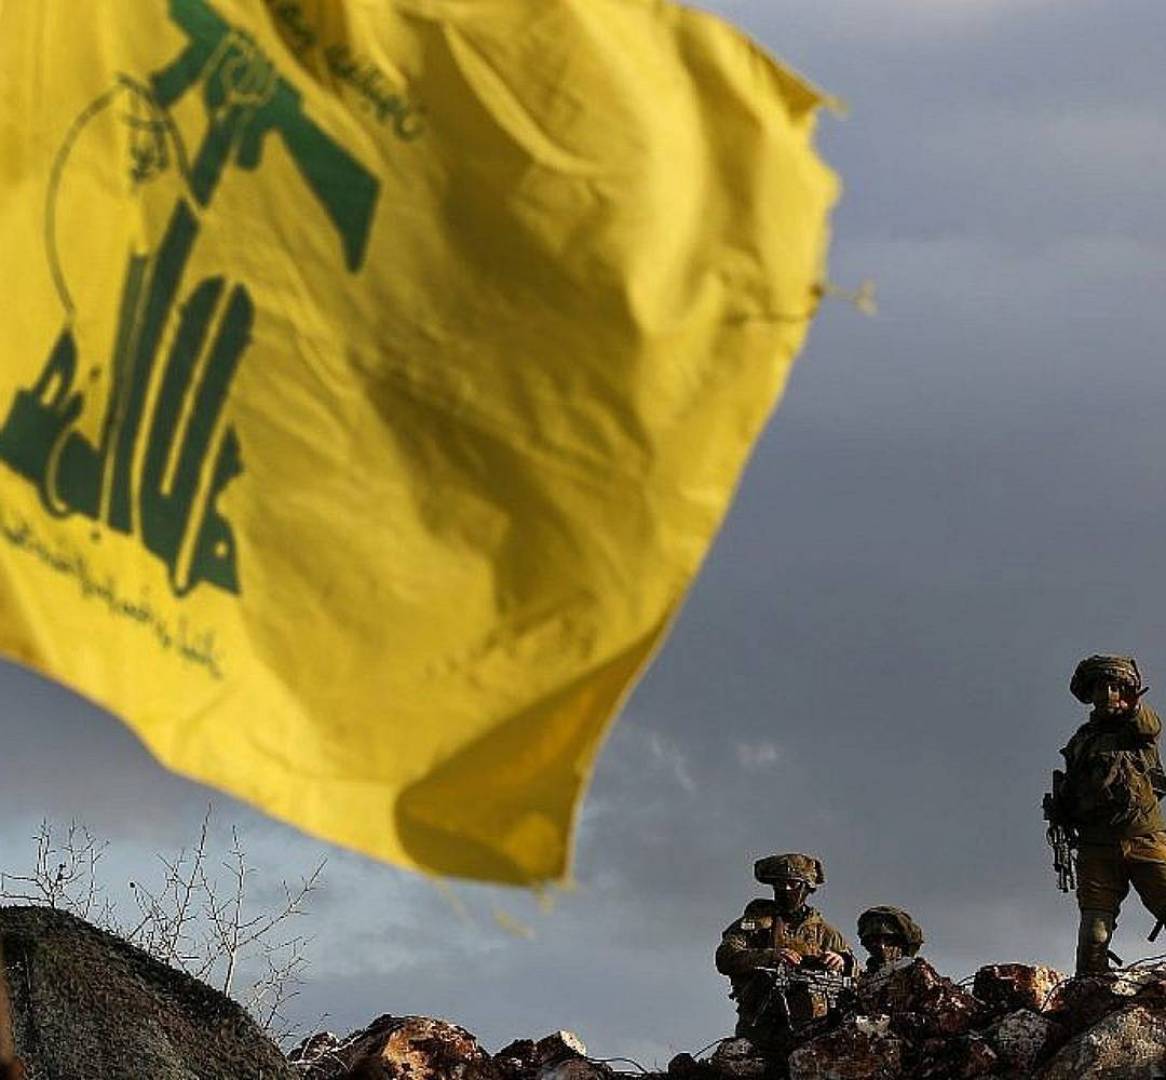 حزب الله: 3 طائرات مسيرة اطلقت بإتجاه منطقة كاريش وأنجزت مهمتها ووصلت الرسال